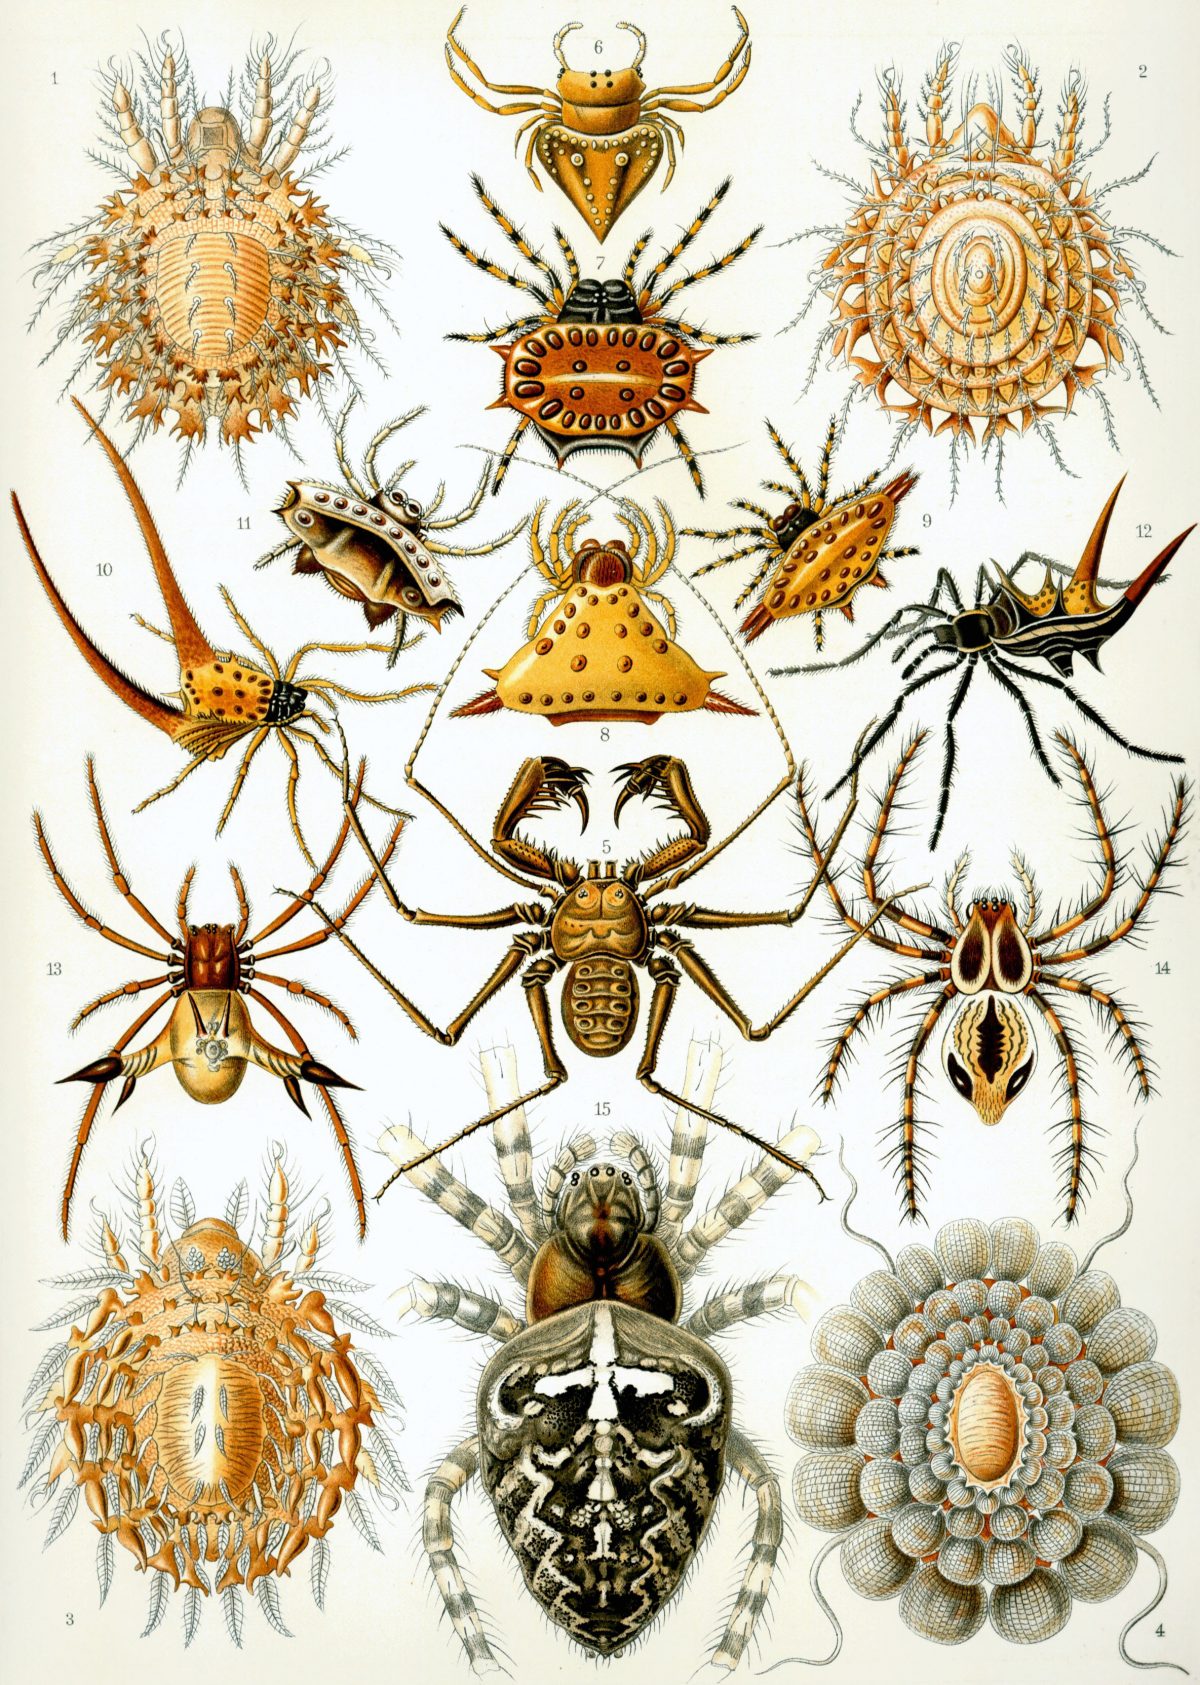 Ernst Haeckel - Kunstformen der Natur (1904), plate 66: Arachnida